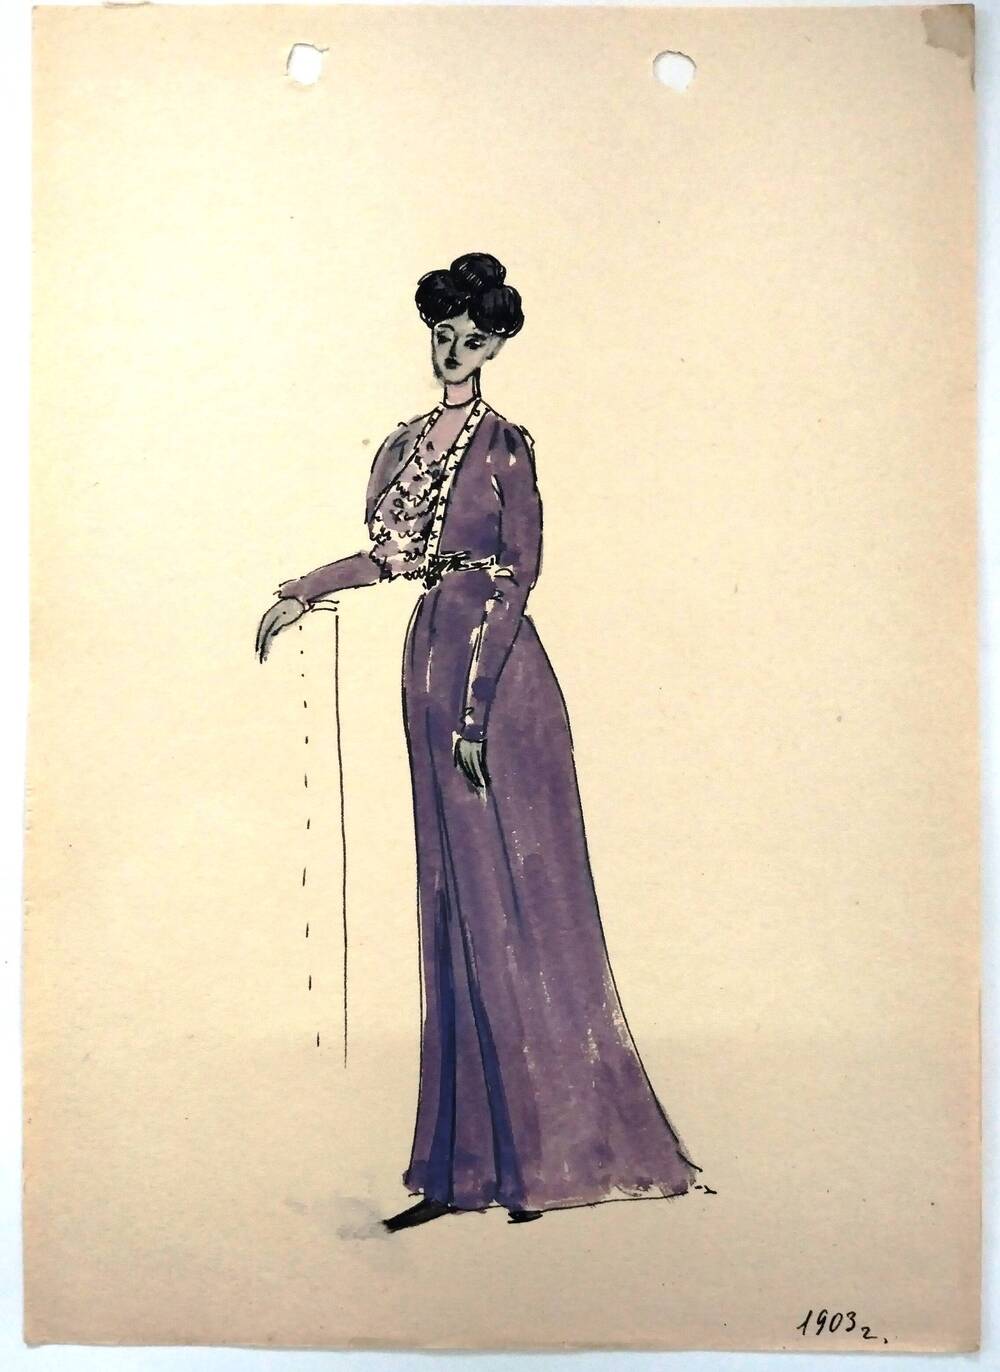 Чернышова Г.А. Эскиз женского костюма 1903 года в лиловых тонах, жакетом болеро и блузке с жабо.